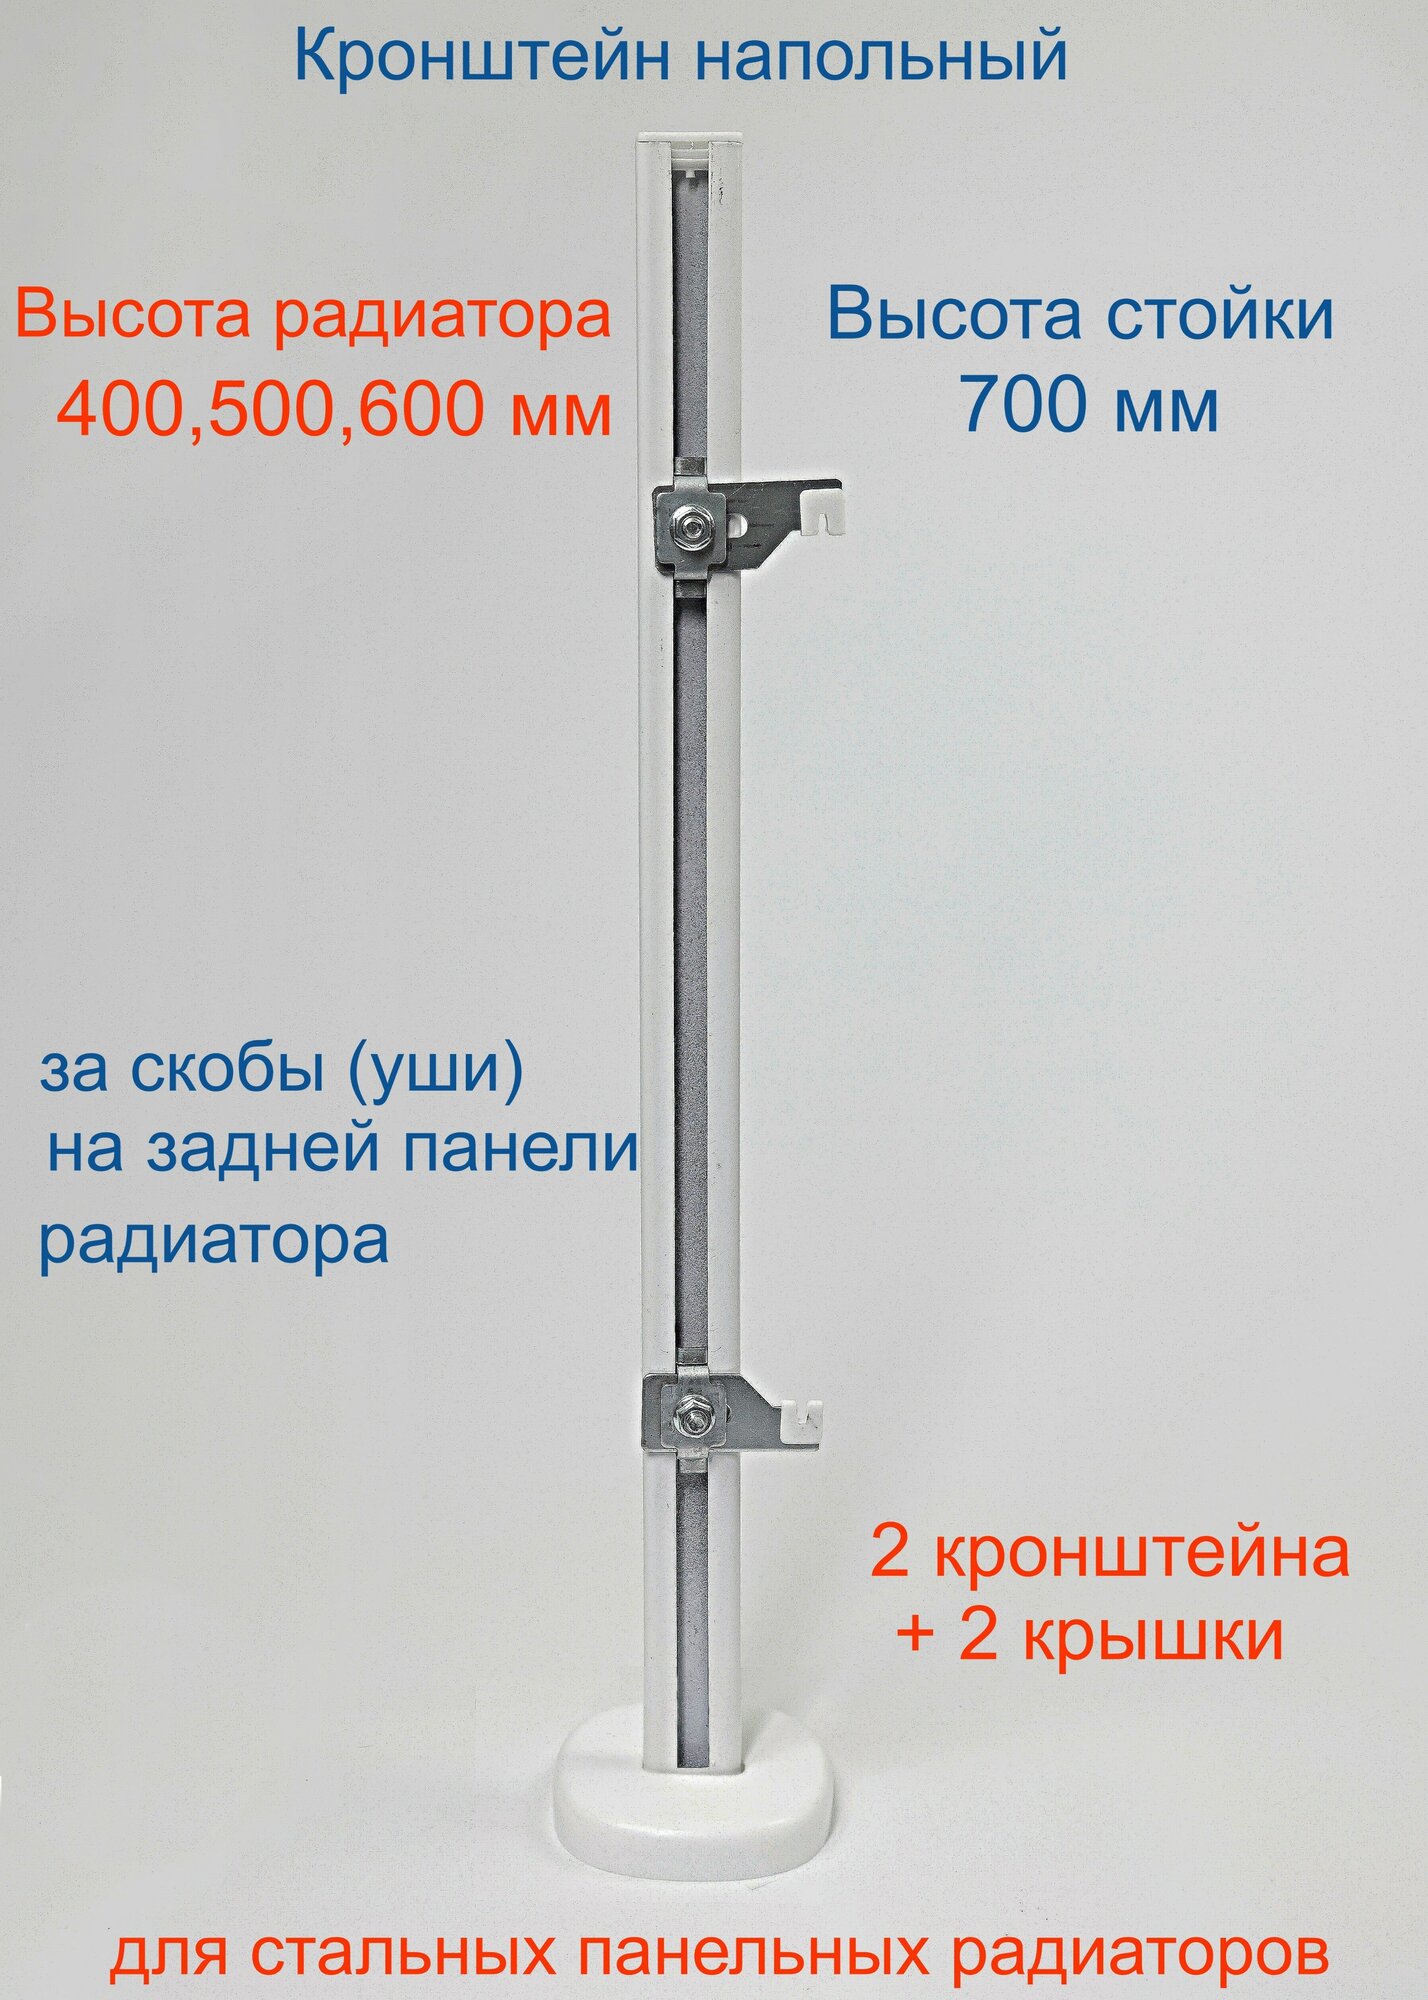 Кронштейн напольный регулируемый Кайрос KHZ4.70 для стальных панельных радиаторов высотой 400, 500, 600 мм (высота стойки 700 мм) Комплект 2 шт